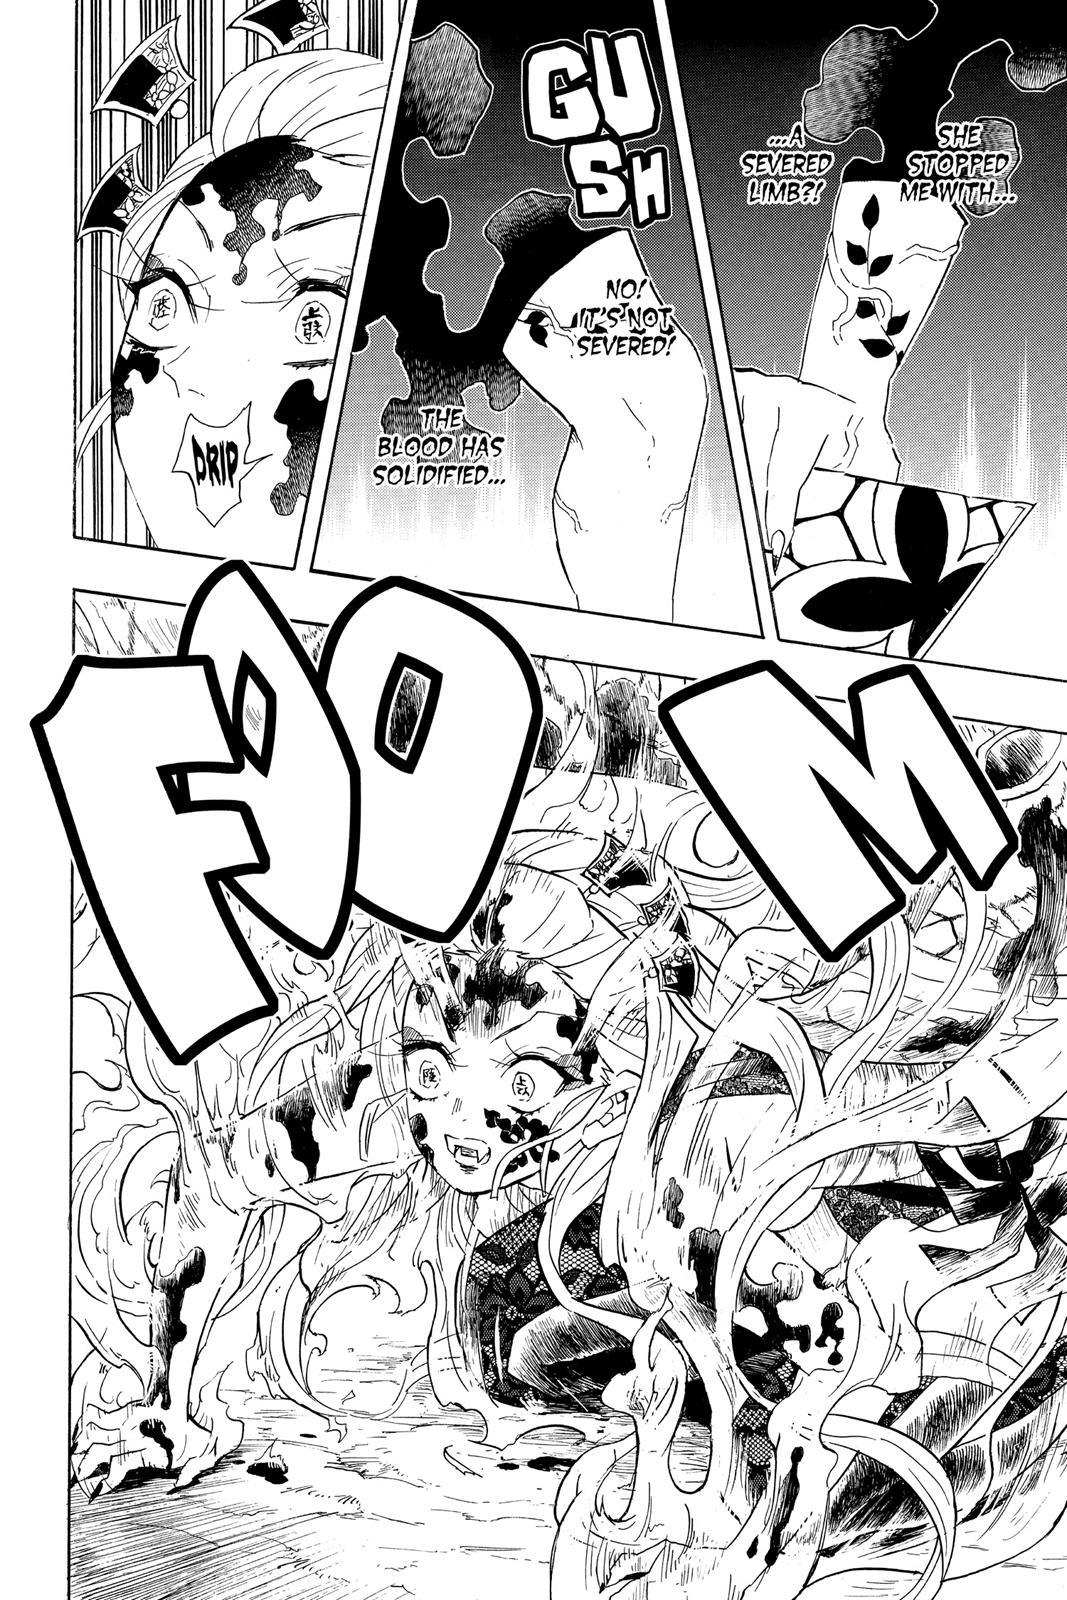 Demon Slayer Manga Manga Chapter - 84 - image 4